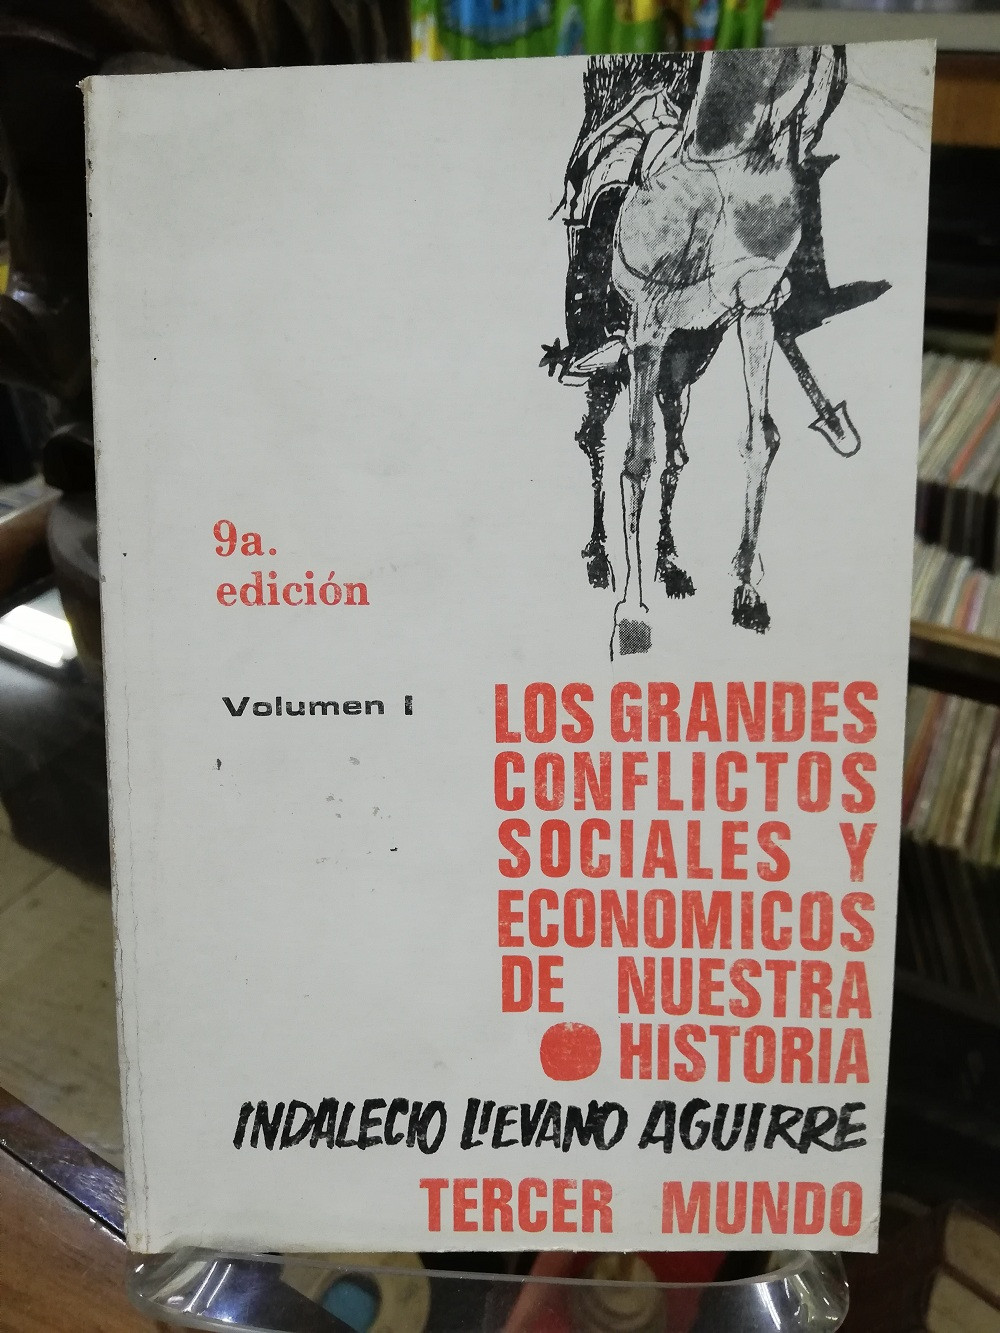 Imagen LOS GRANDES CONFLICTOS SOCIALES Y ECONÓMICOS DE NUESTRA HISTORIA  VOL. 1 - INDALECIO LIEVANO AGUIRRE 1